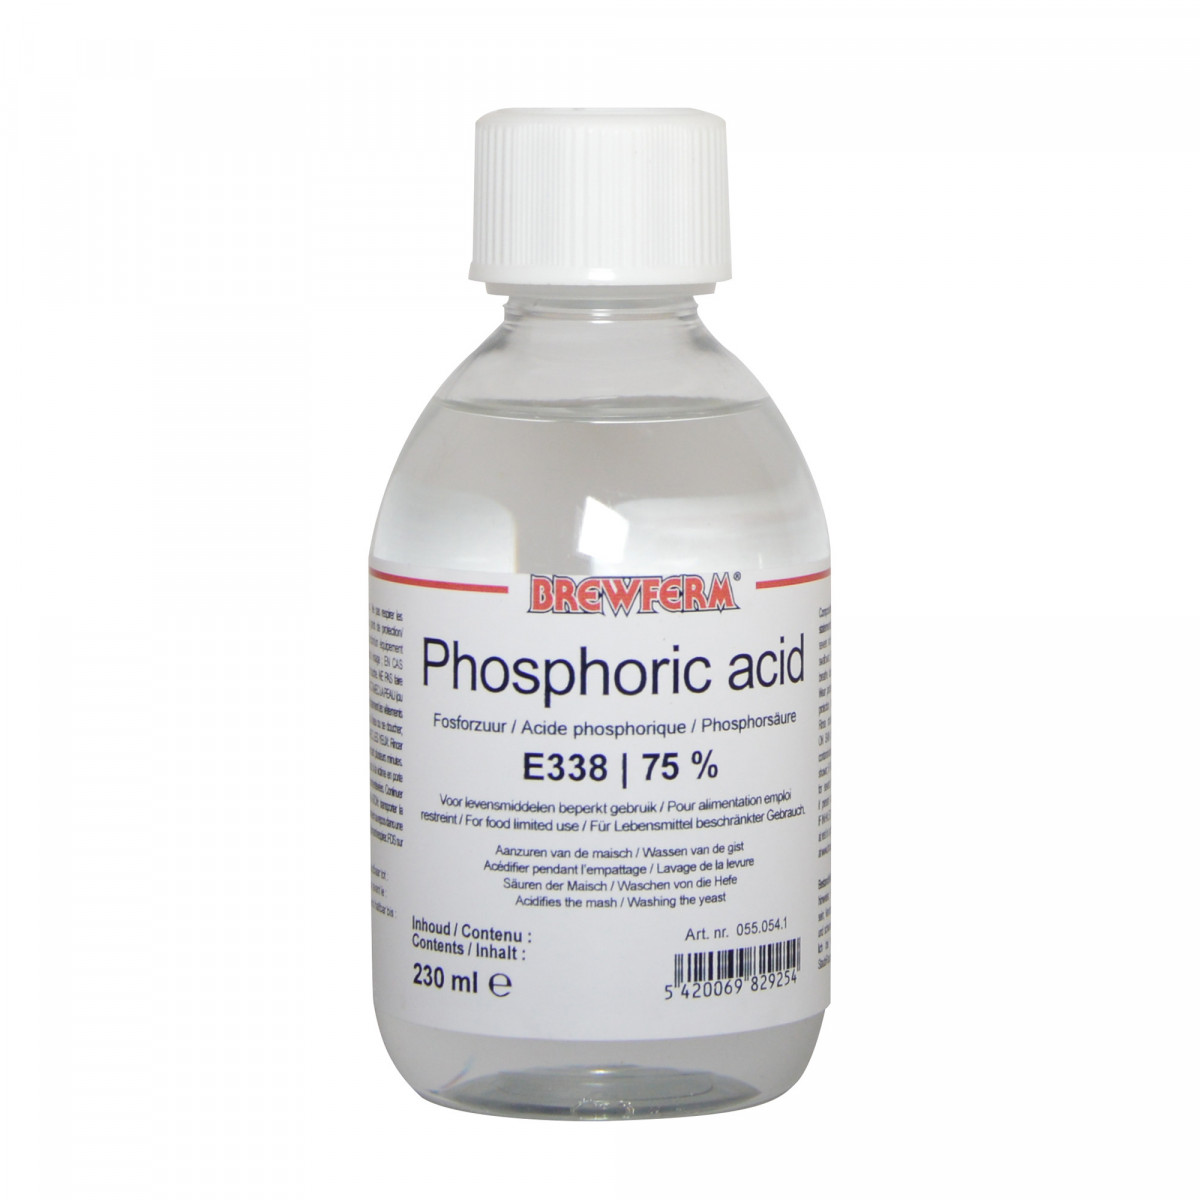 phosphoric acid uses